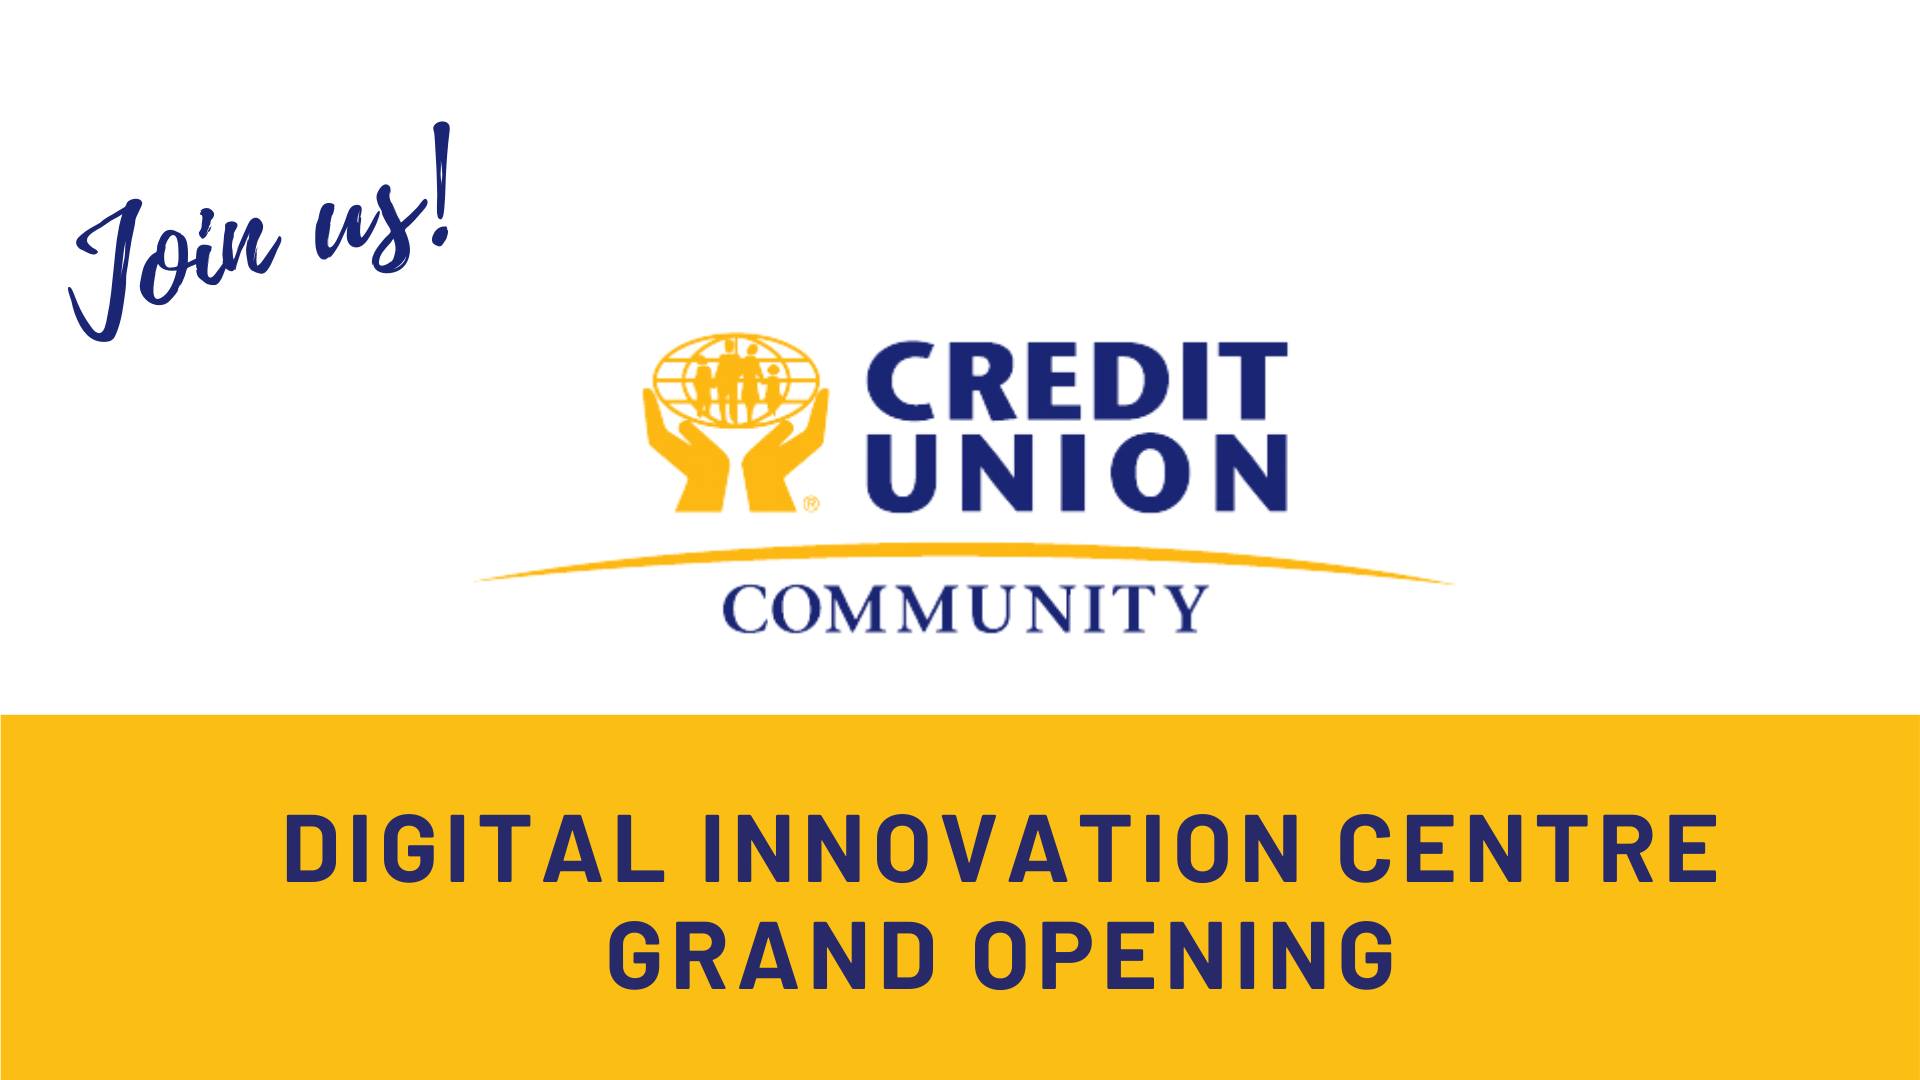 Digital Innovation Centre - Grand Opening